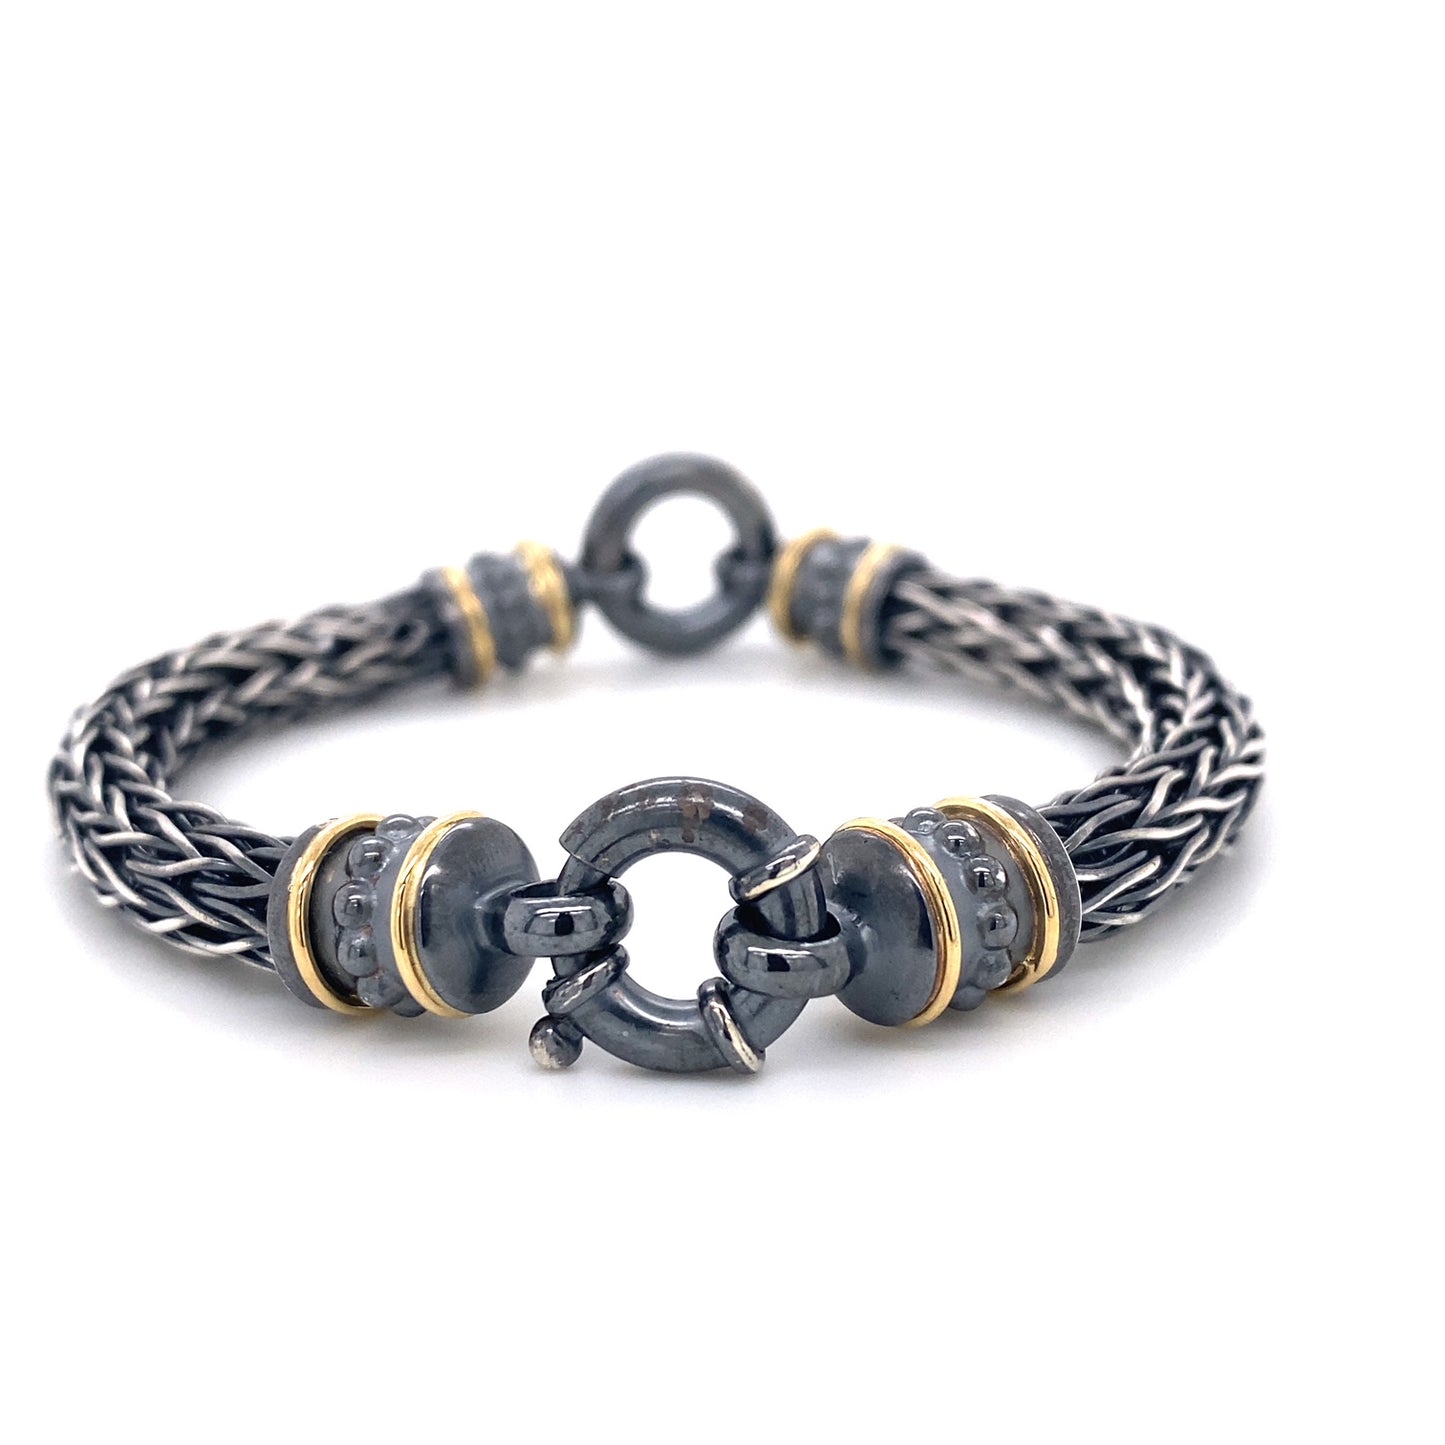 Custom Jewelry, Roman chain bracelet, llyn strong, Greenville, South Carolina